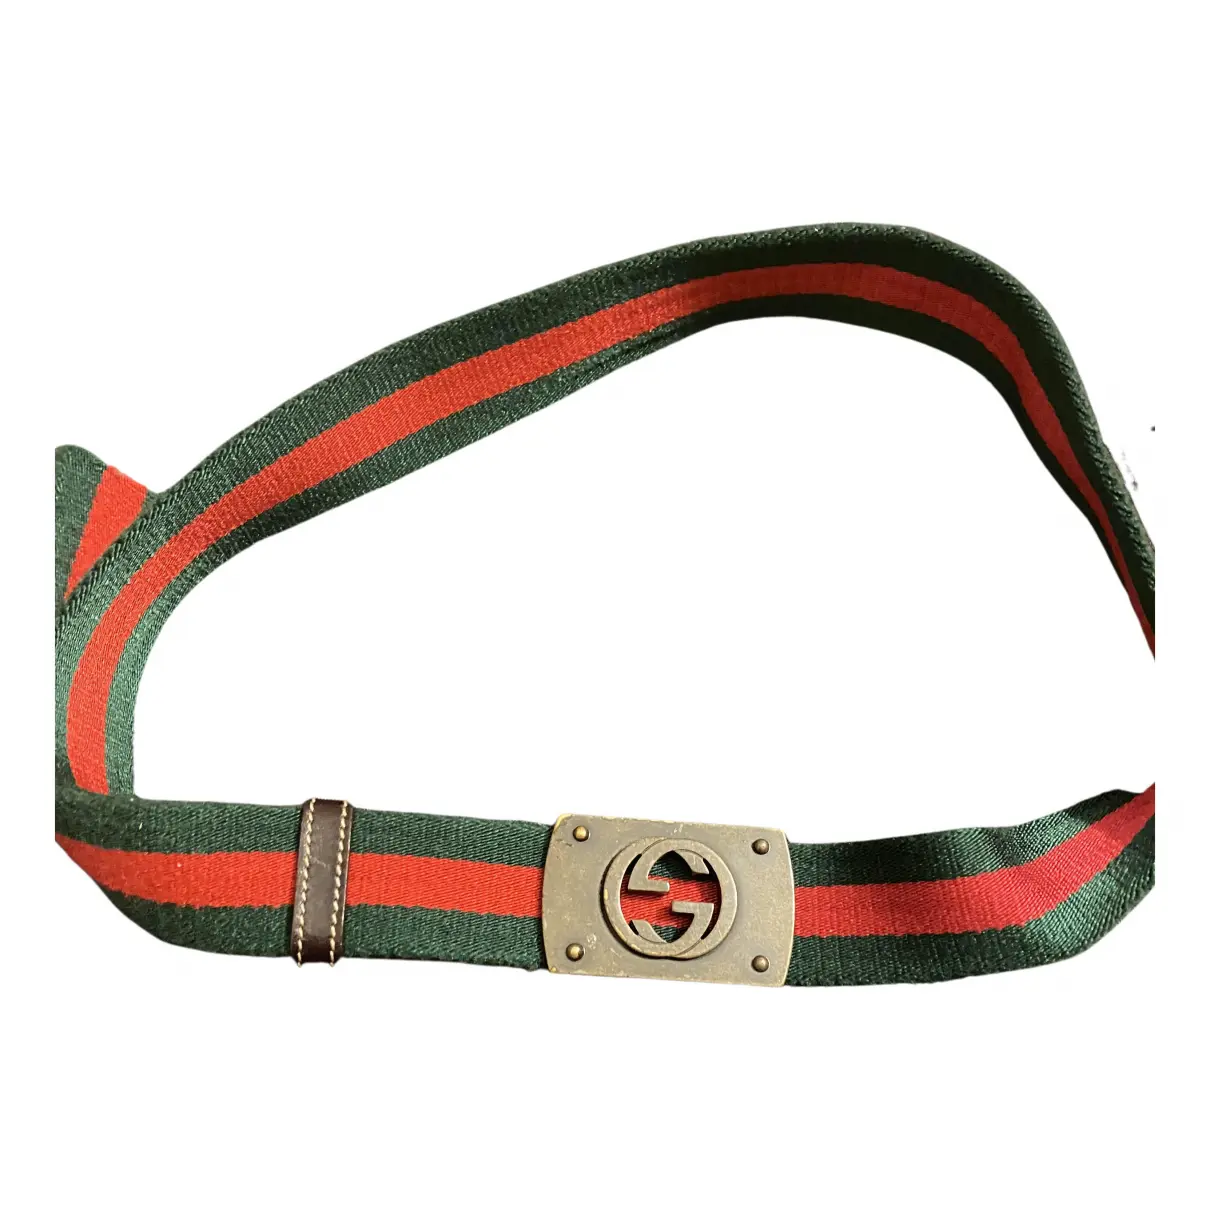 Interlocking Buckle belt Gucci